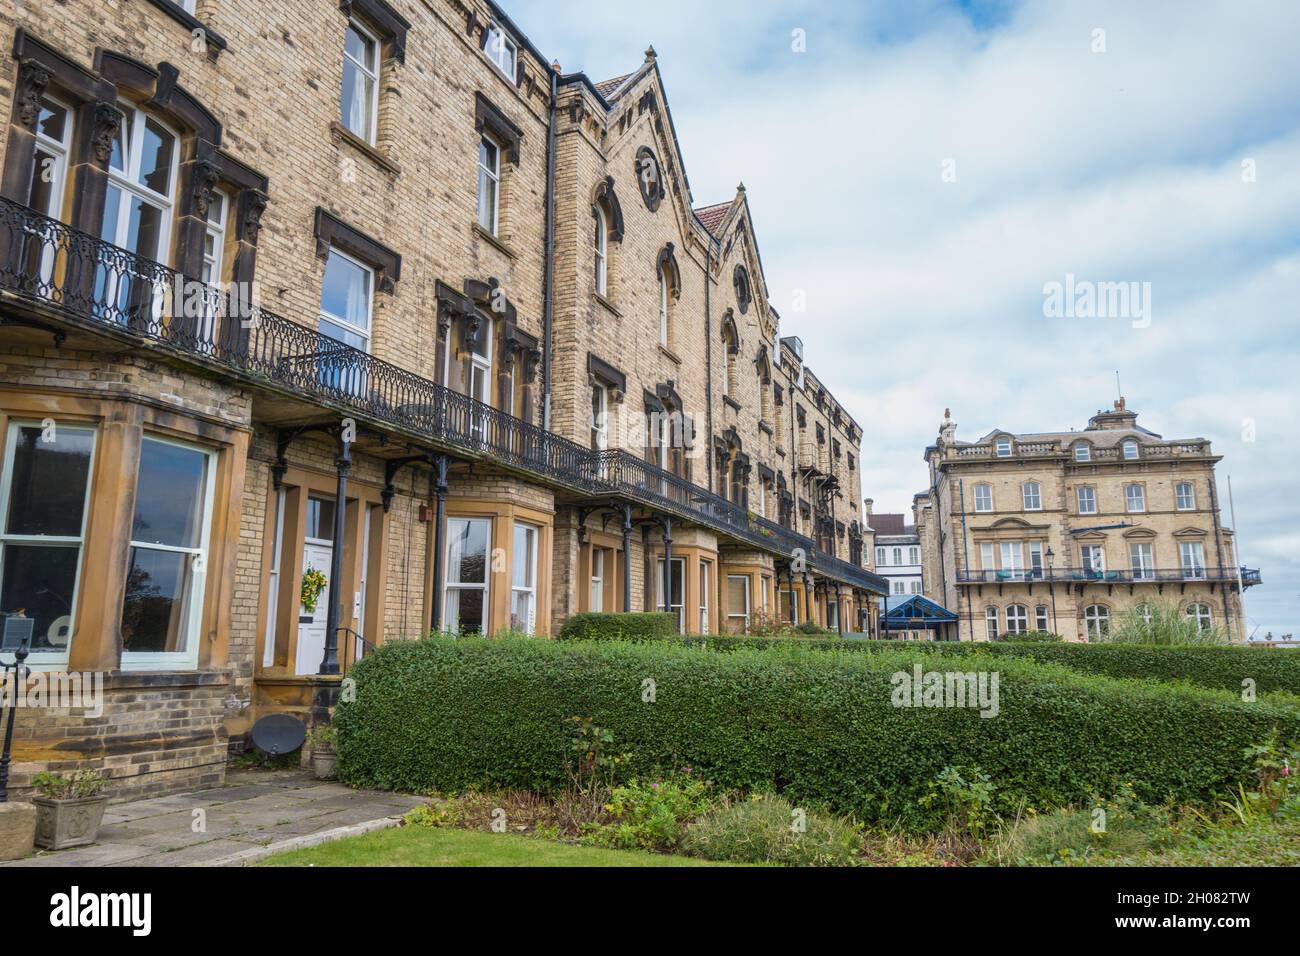 Balmoral Terrace, le riche logement victorien maintenant converti en appartements à Saltburn par la mer, cleveland, Angleterre, Royaume-Uni Banque D'Images